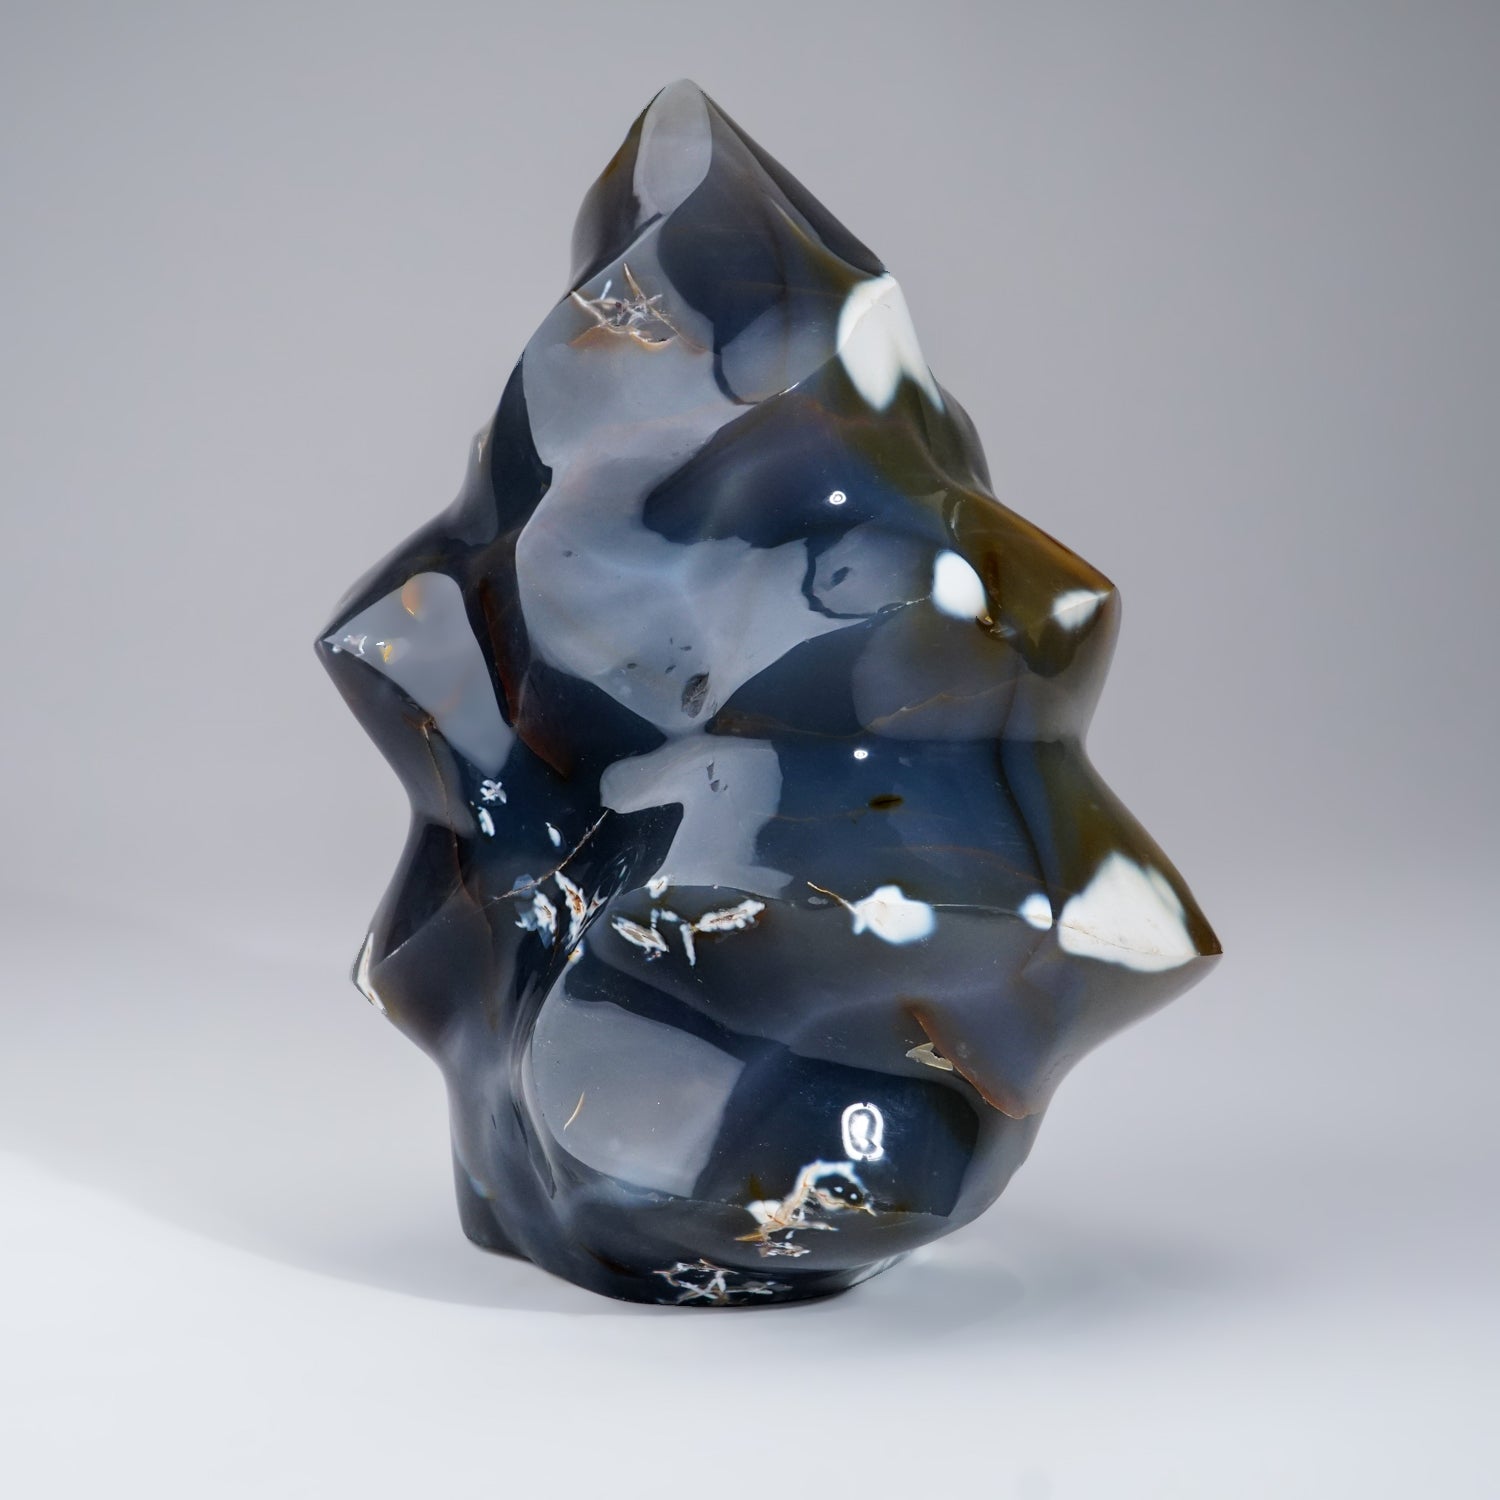 Genuine Polished Blue Chalcedony Orca Stone Flame Freeform (15.6 lbs)